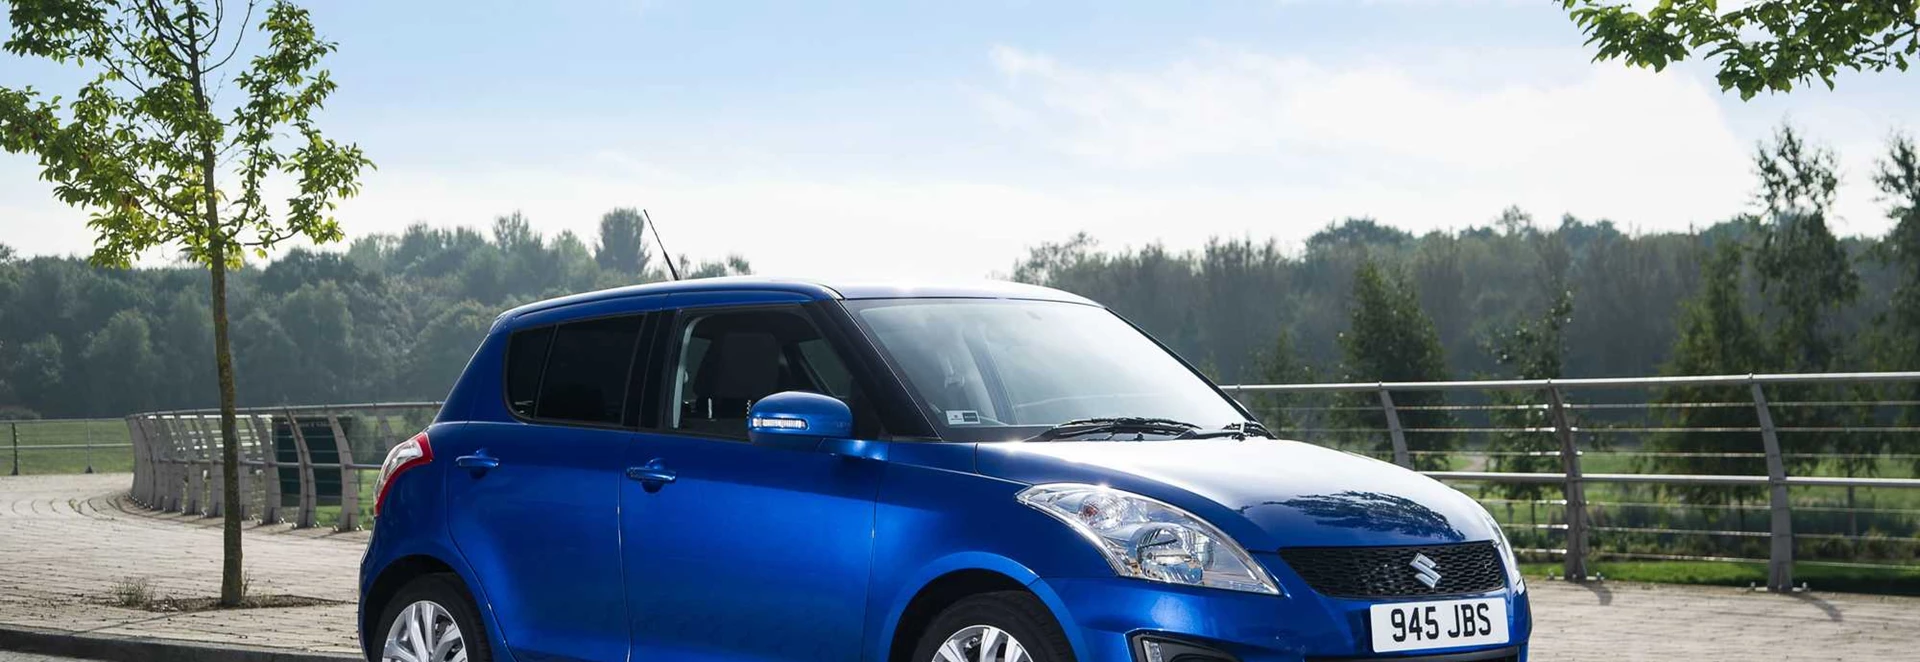 Suzuki Swift hatchback review 